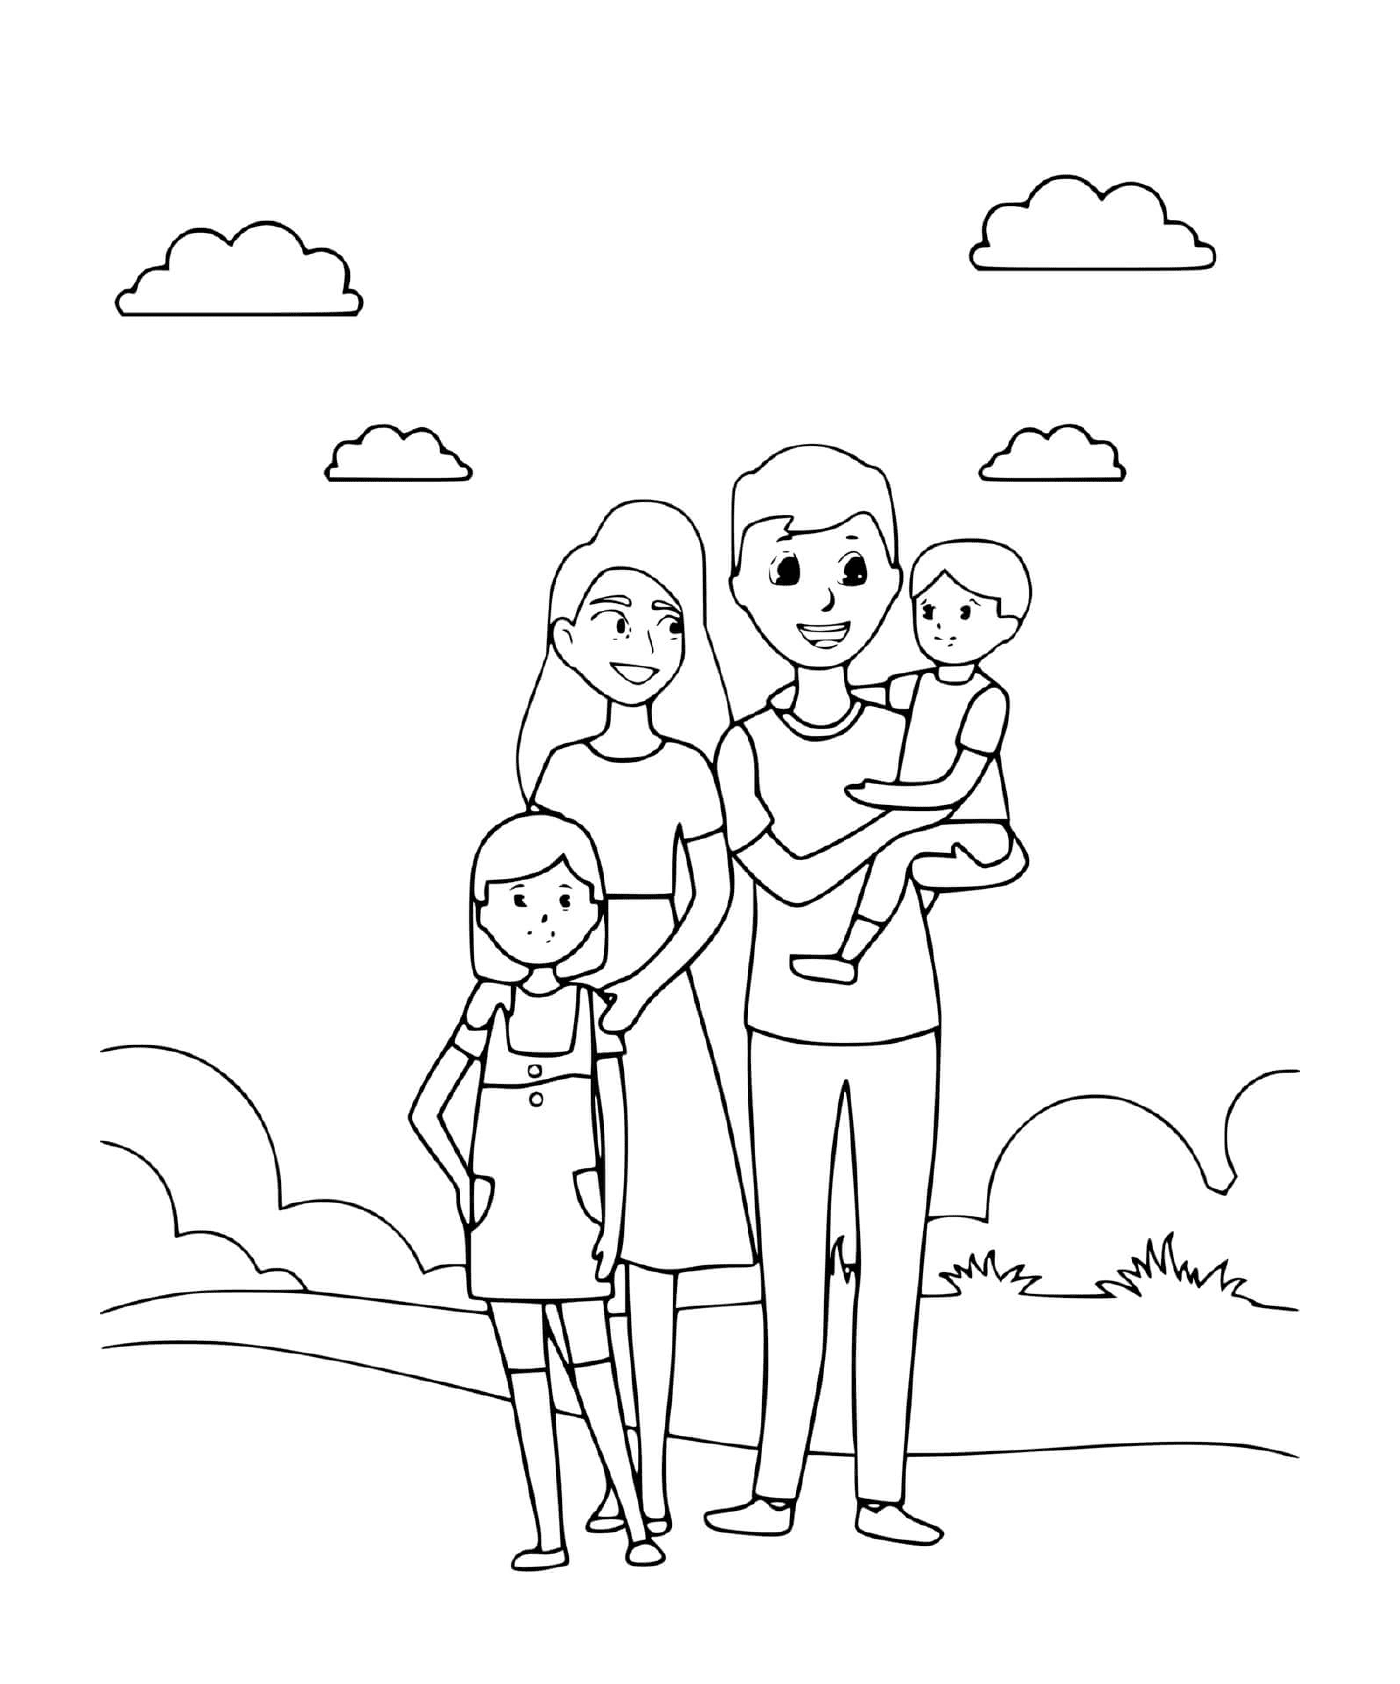  छुट्टी पर एक खूबसूरत परिवार 